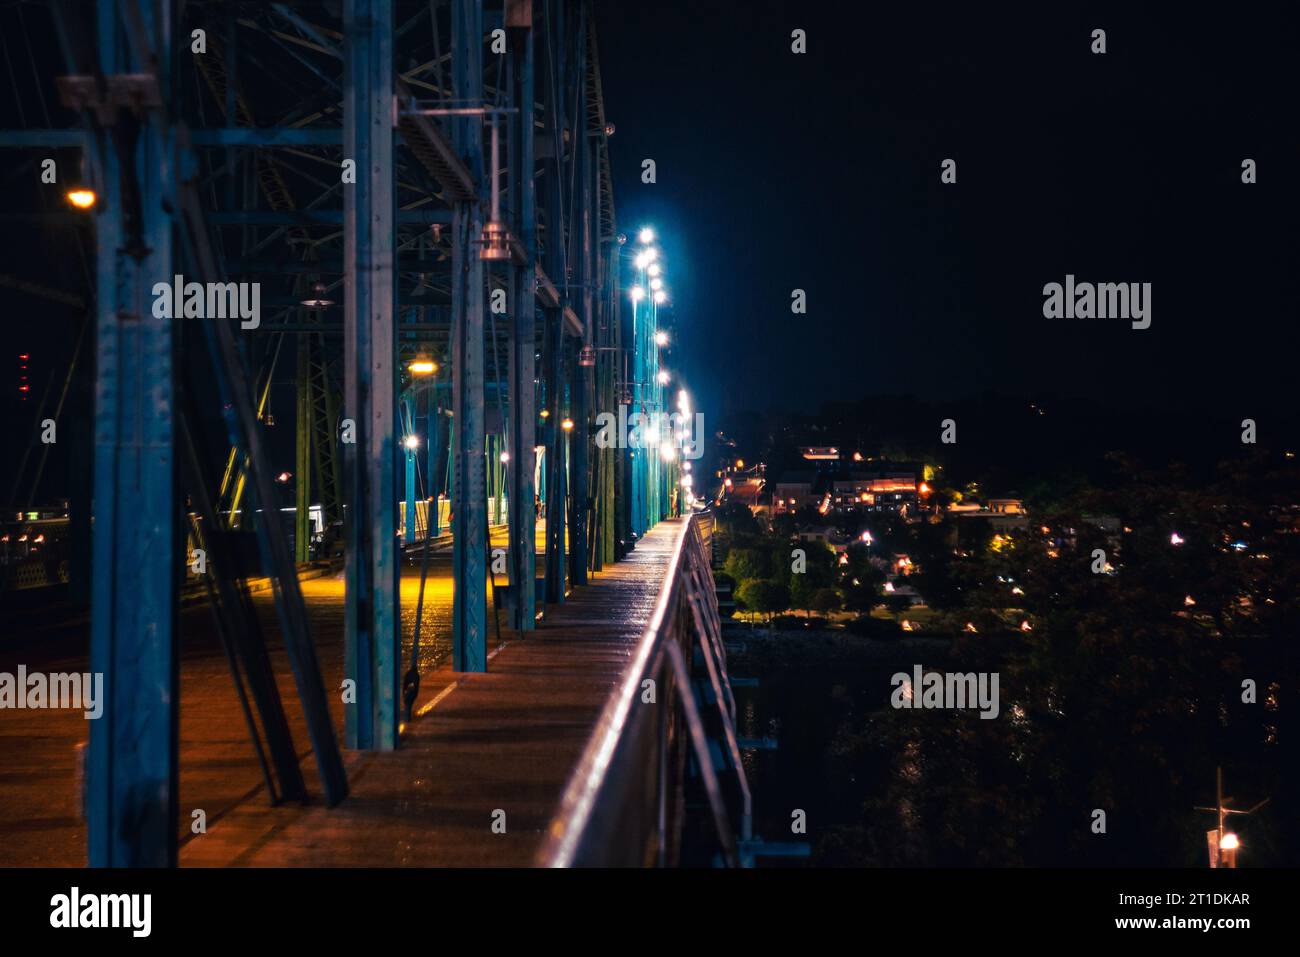 Ein beschaulicher Weg, der von smaragdfarbenen Lichtern beleuchtet wird und von hoch aufragenden Gebäuden am Abend umgeben ist Stockfoto